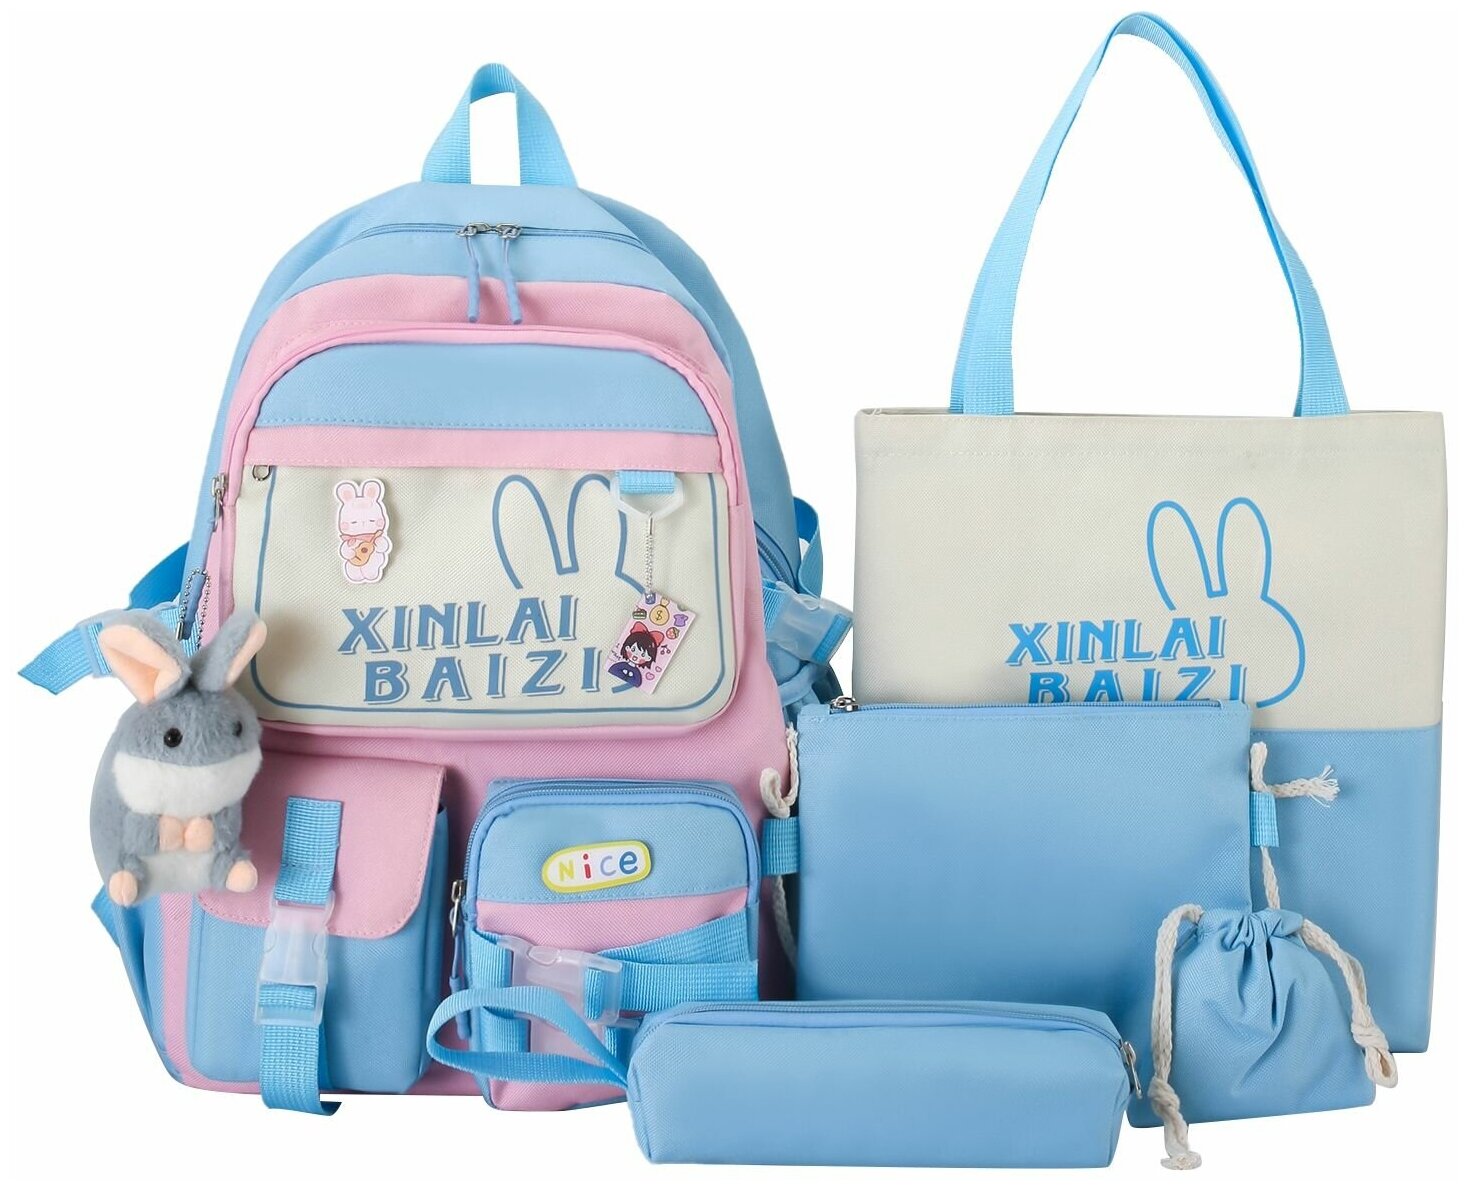 Рюкзак для девочки с комплектом 5 в 1 /Детский пенал, сумки, рюкзак кошелек 5 в 1 для подростков девочек и для прогулки